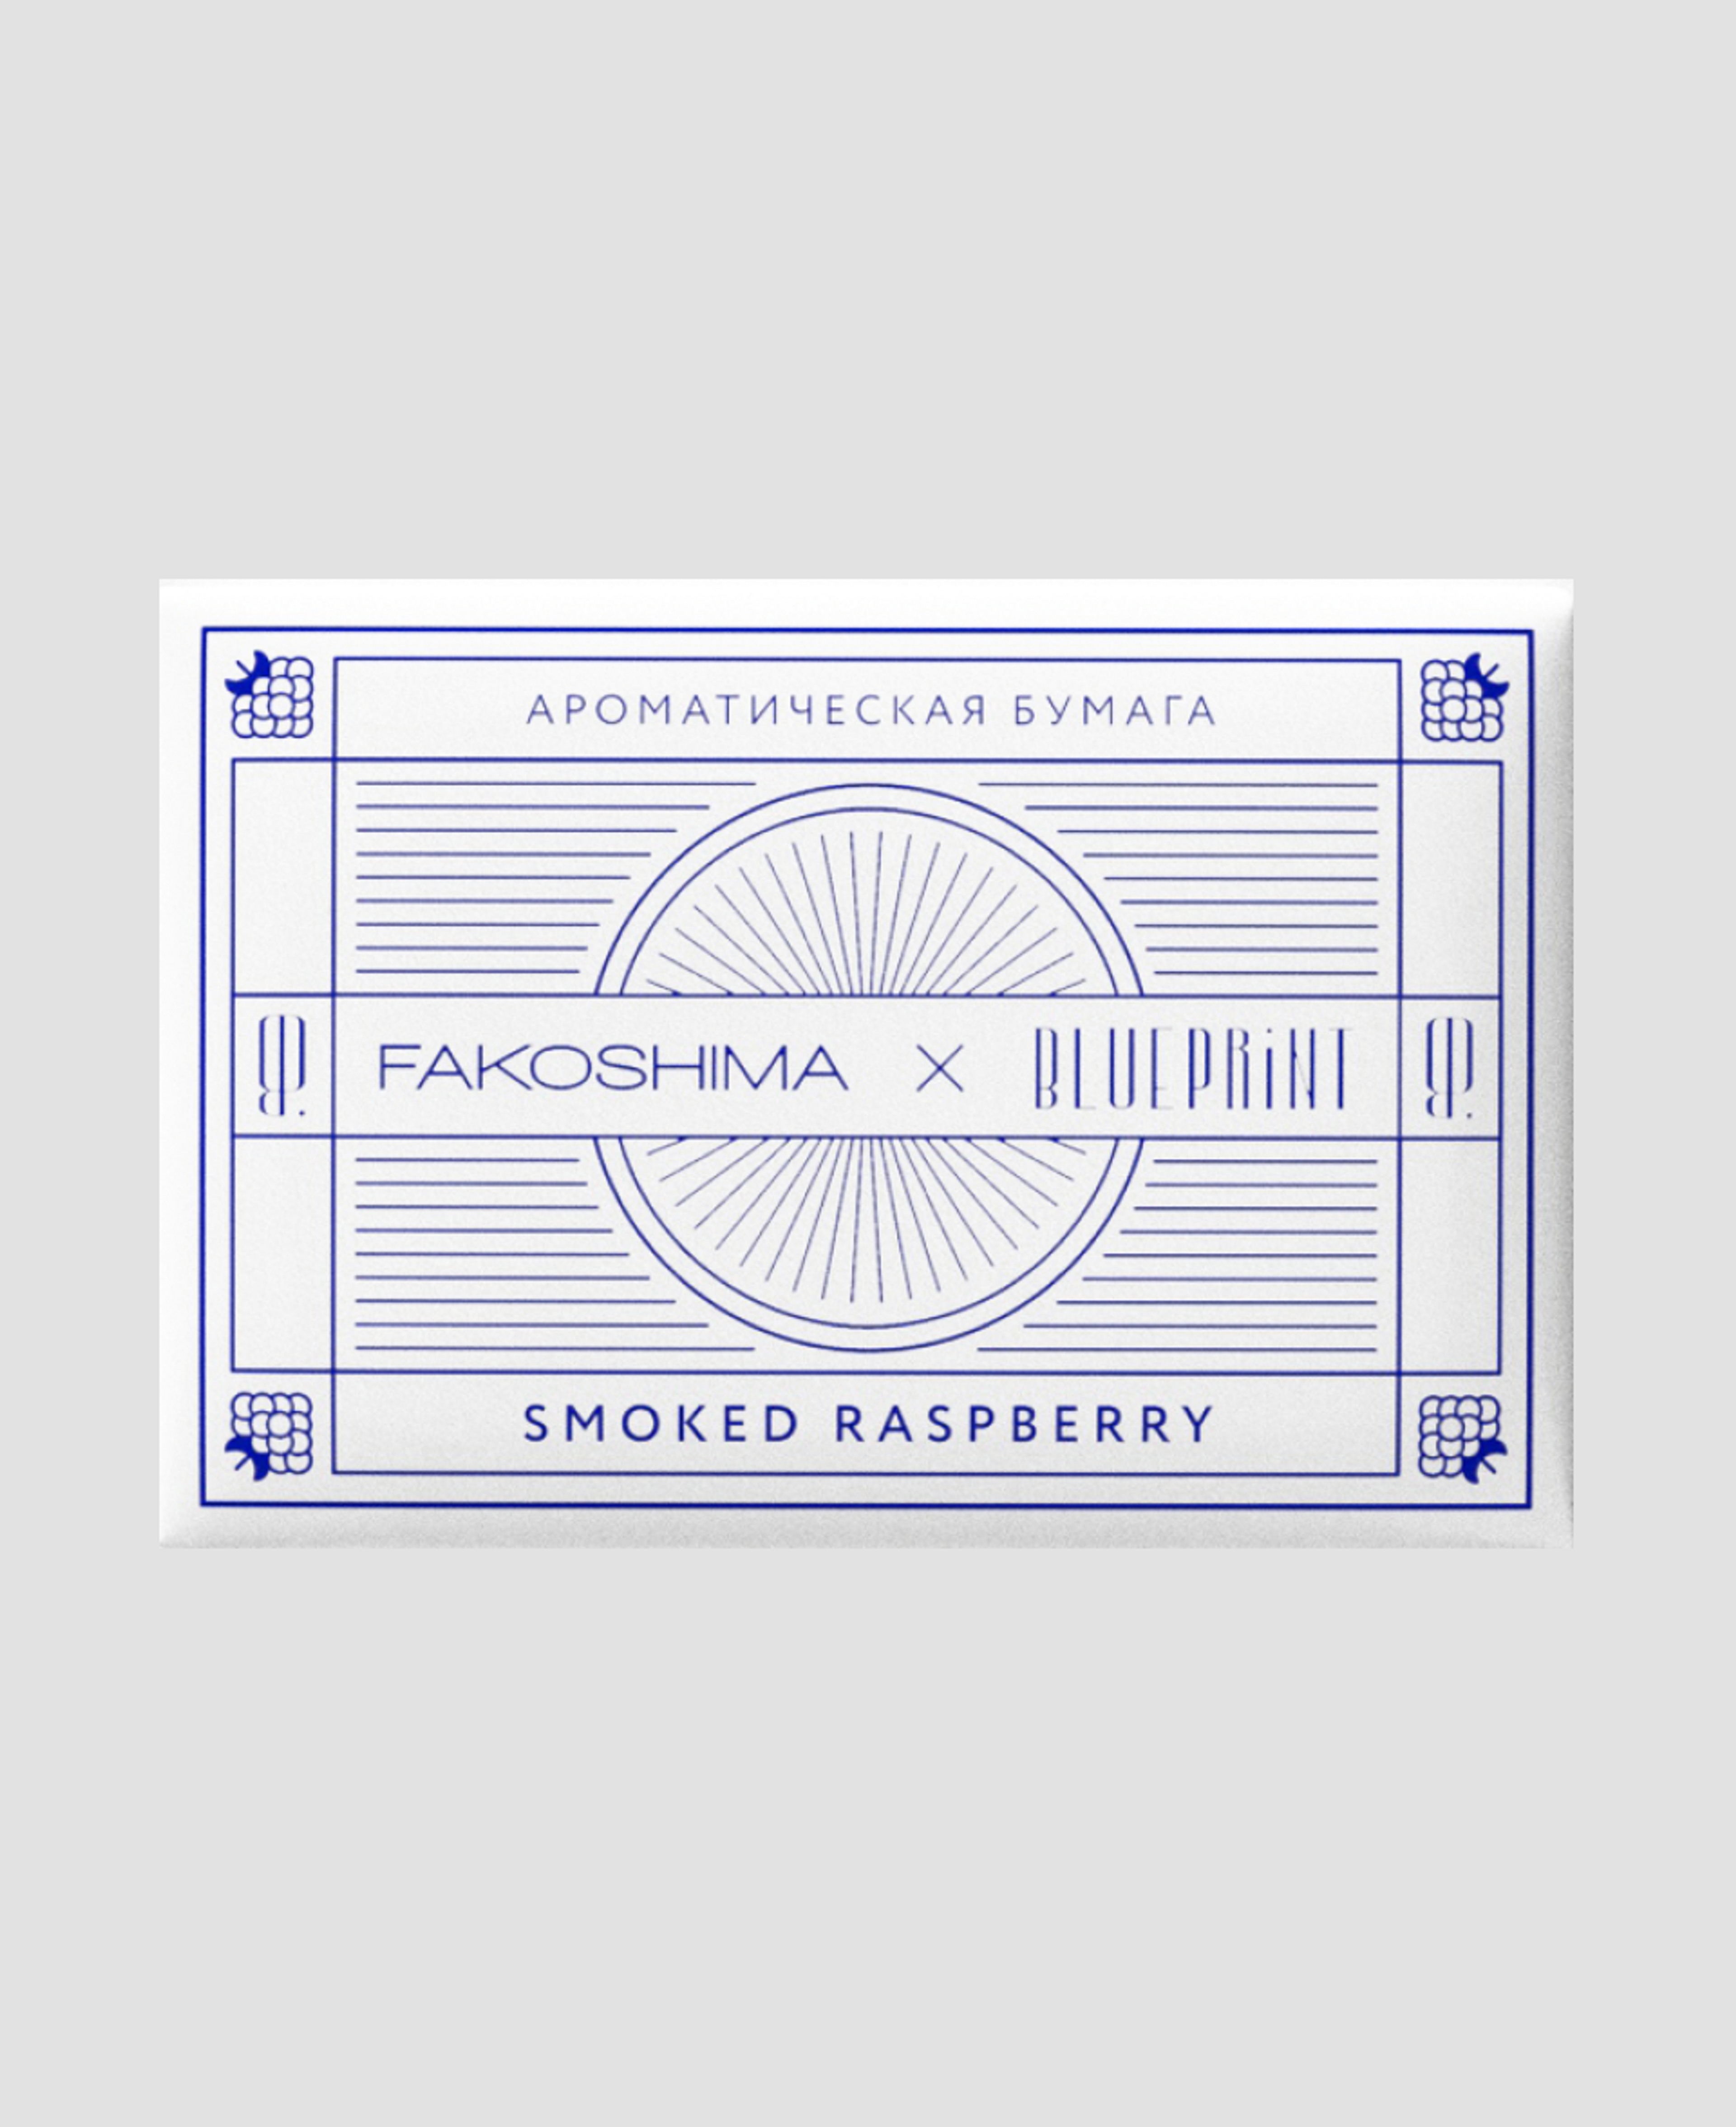 Ароматическая бумага Fakoshima × Blueprint